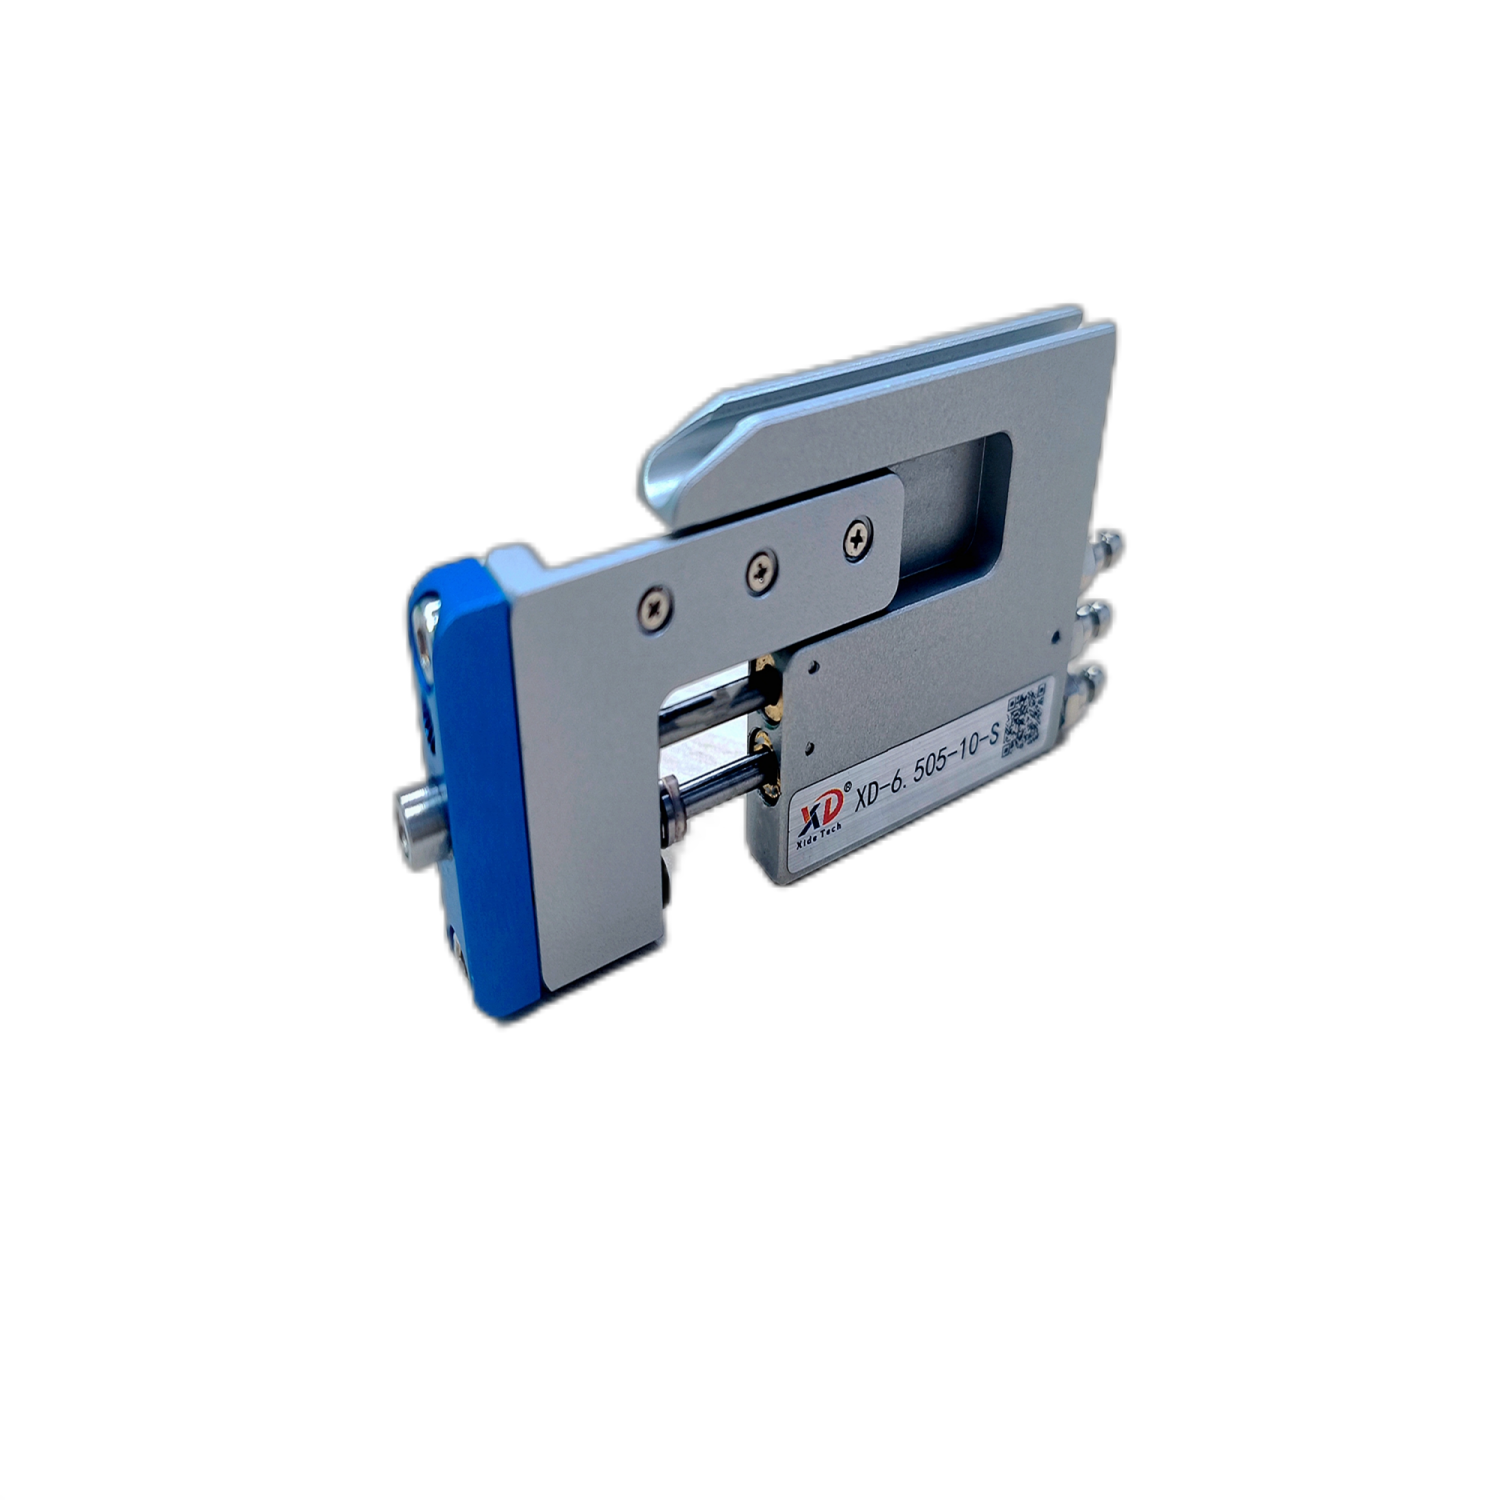  磁感应超薄气缸 卡片气缸 XD-6.505-10-S 刀片气缸